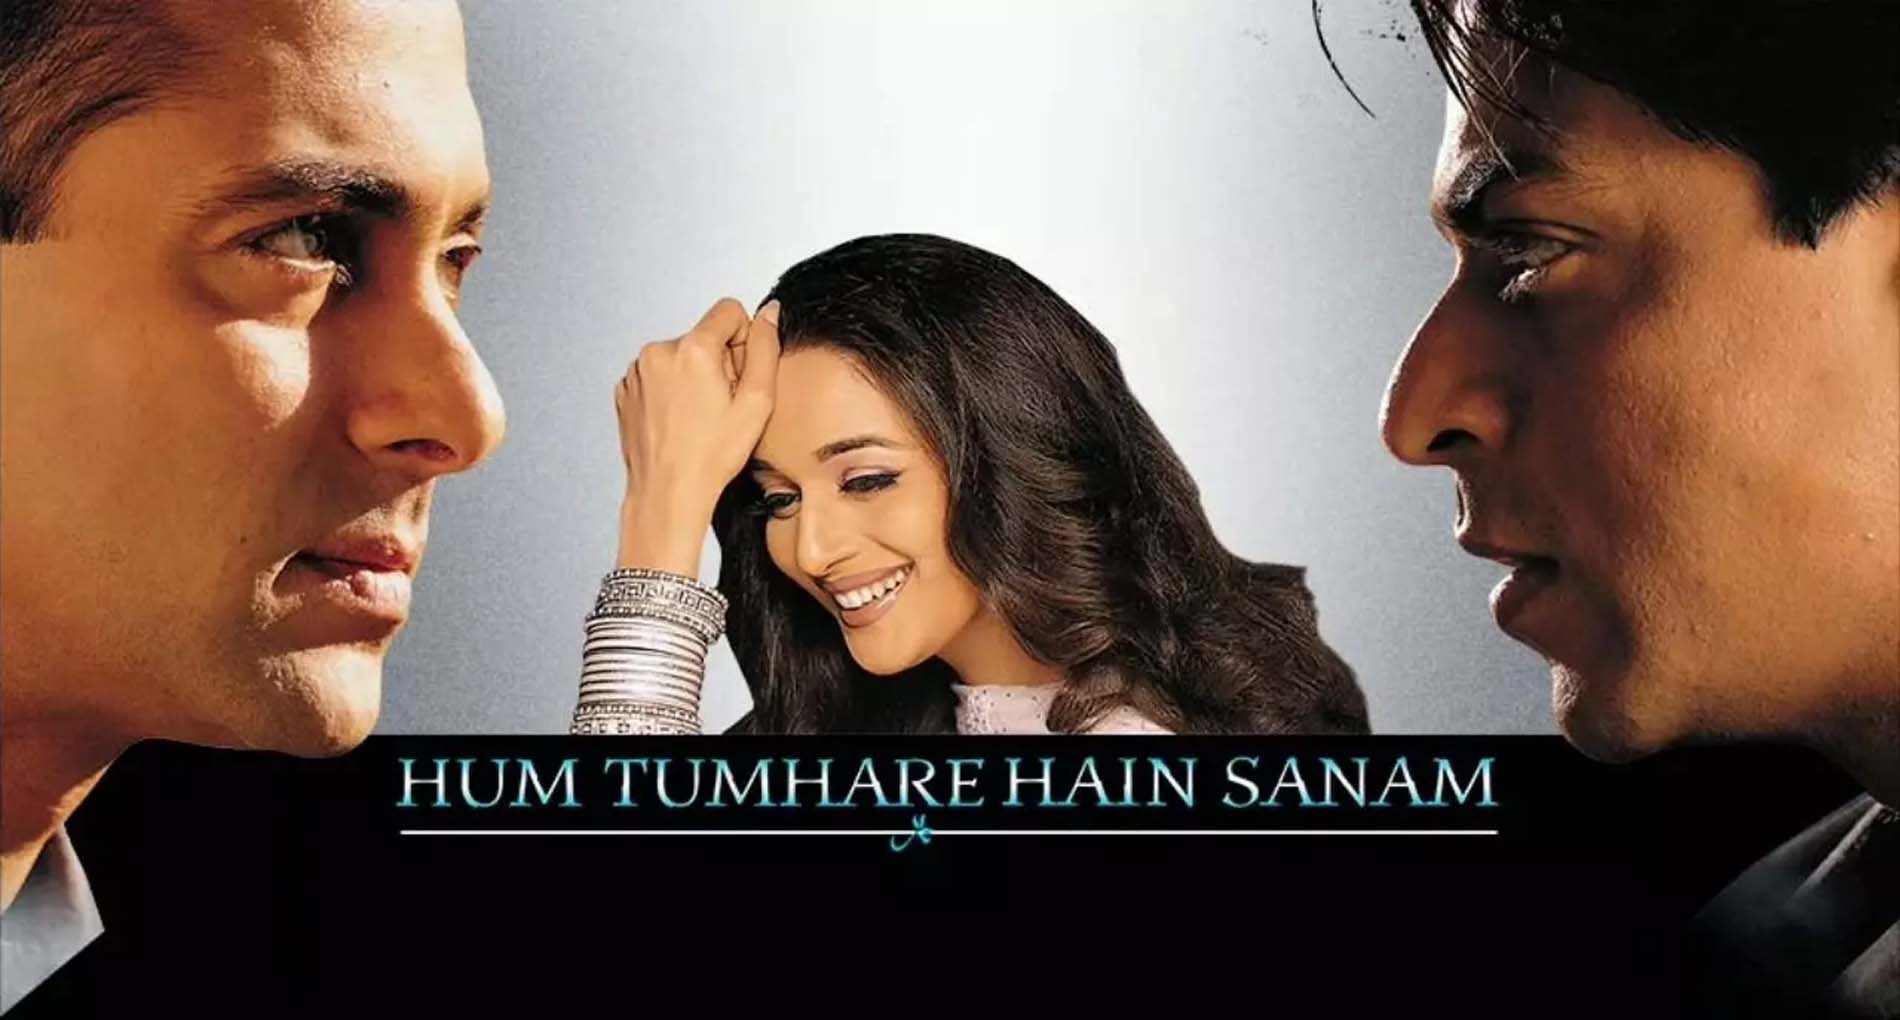 हम तुम्हारे हैं तुम्हारे सनम, Hum Tumhare Hain Sanam Title Lyrics in Hindi